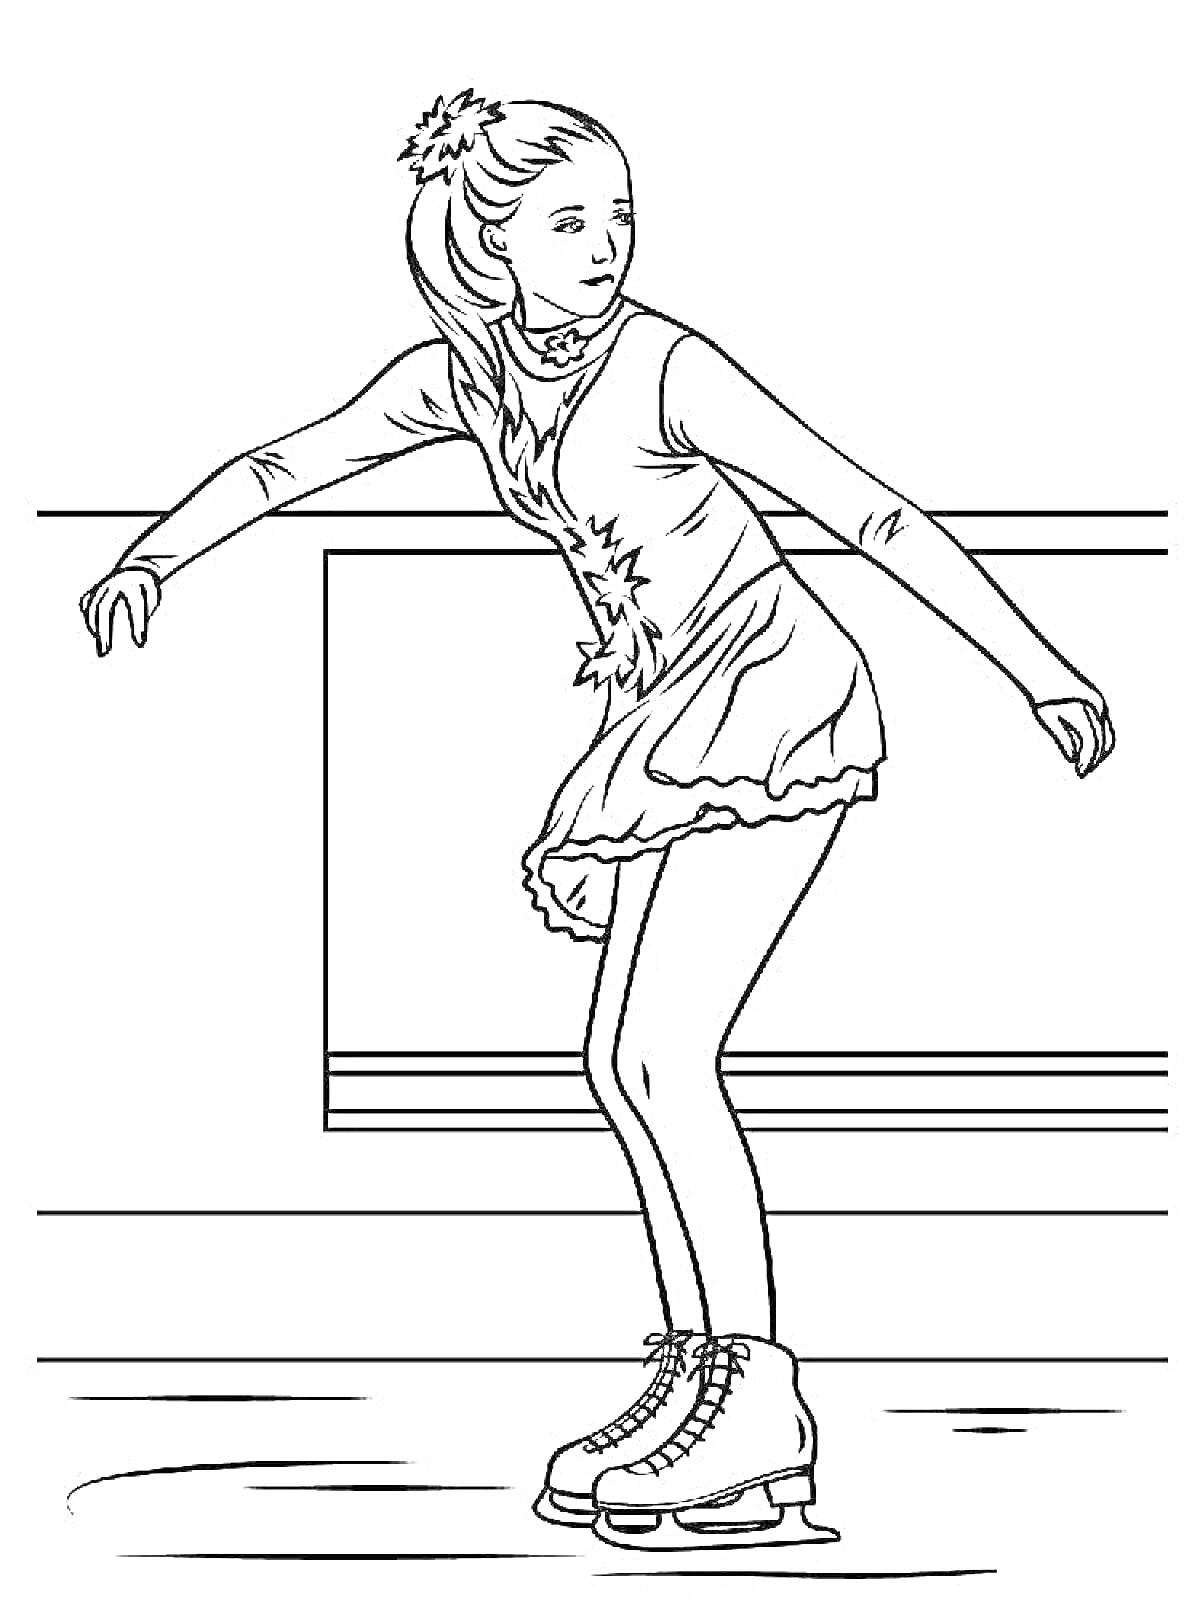 Раскраска Фигуристка на льду с собранными волосами в хвост, в платье с длинным рукавом и на коньках.